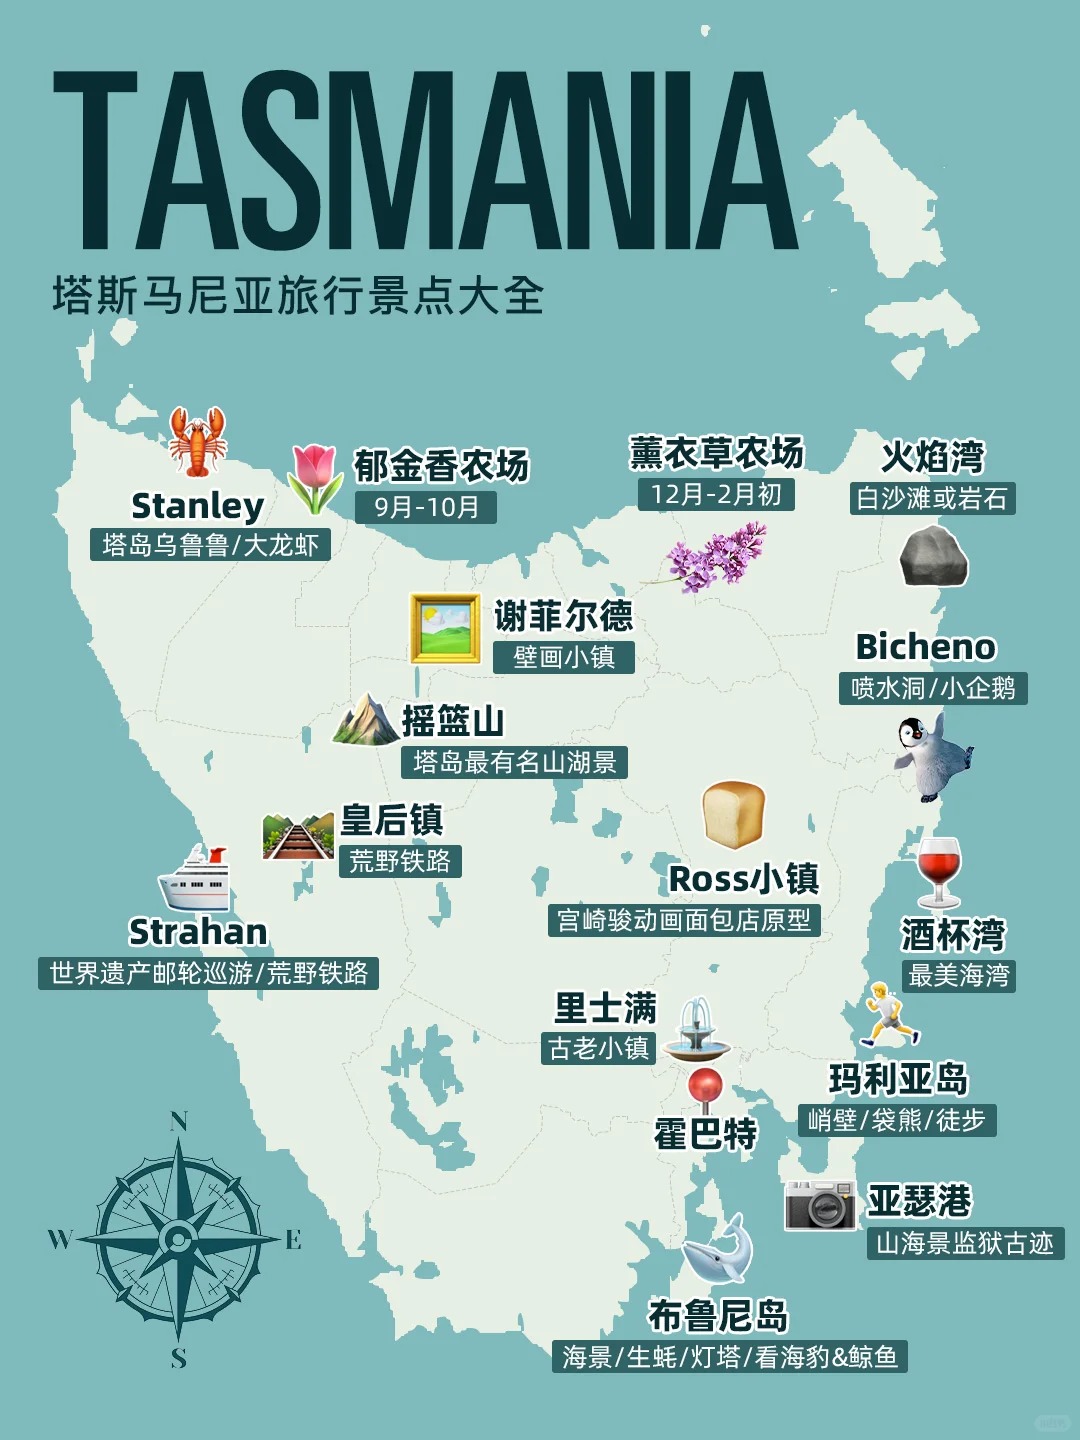 澳洲塔斯马尼亚旅行|盘点地标景点玩法大全